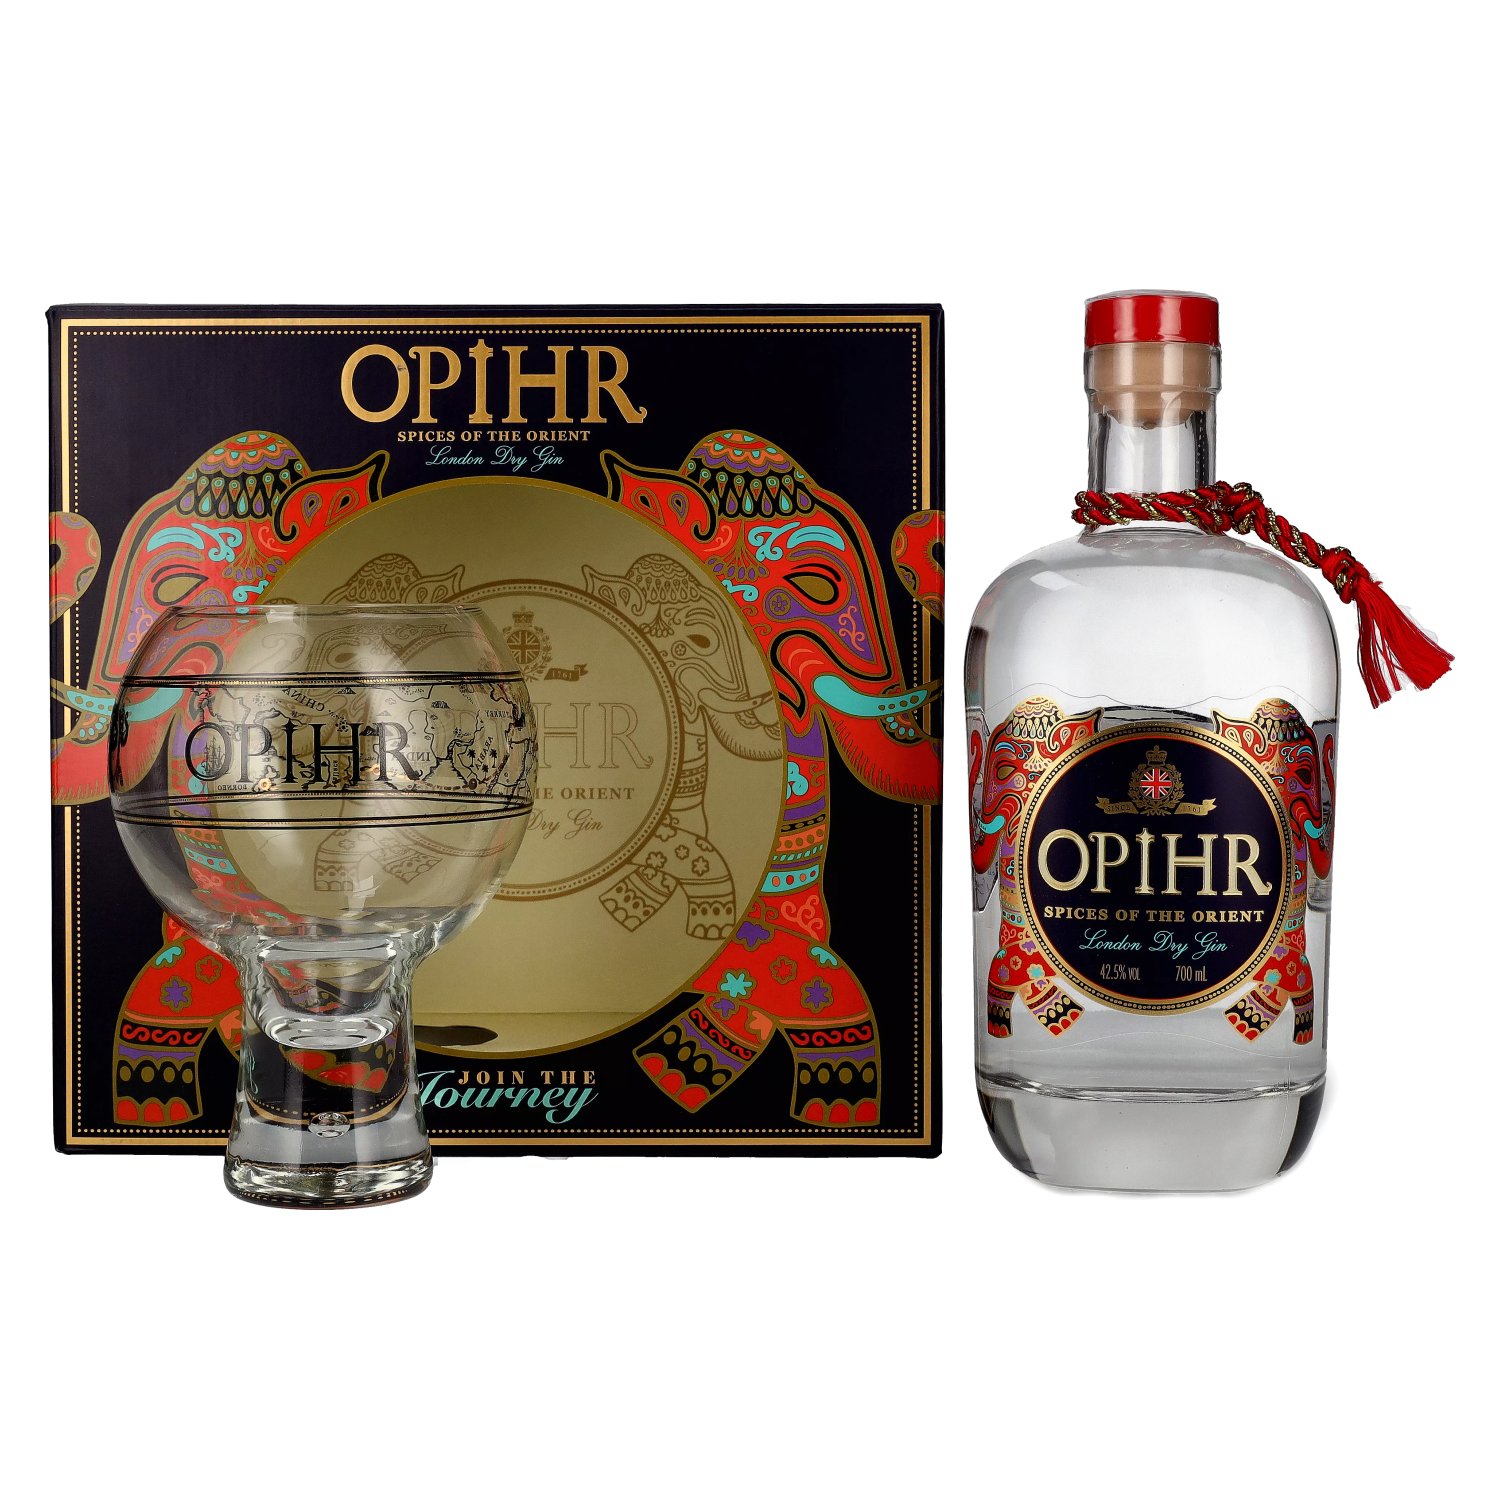 Dry Opihr ORIENTAL Gin 42,5% Geschenkbox in Globe-Glas SPICED mit London 0,7l Vol.